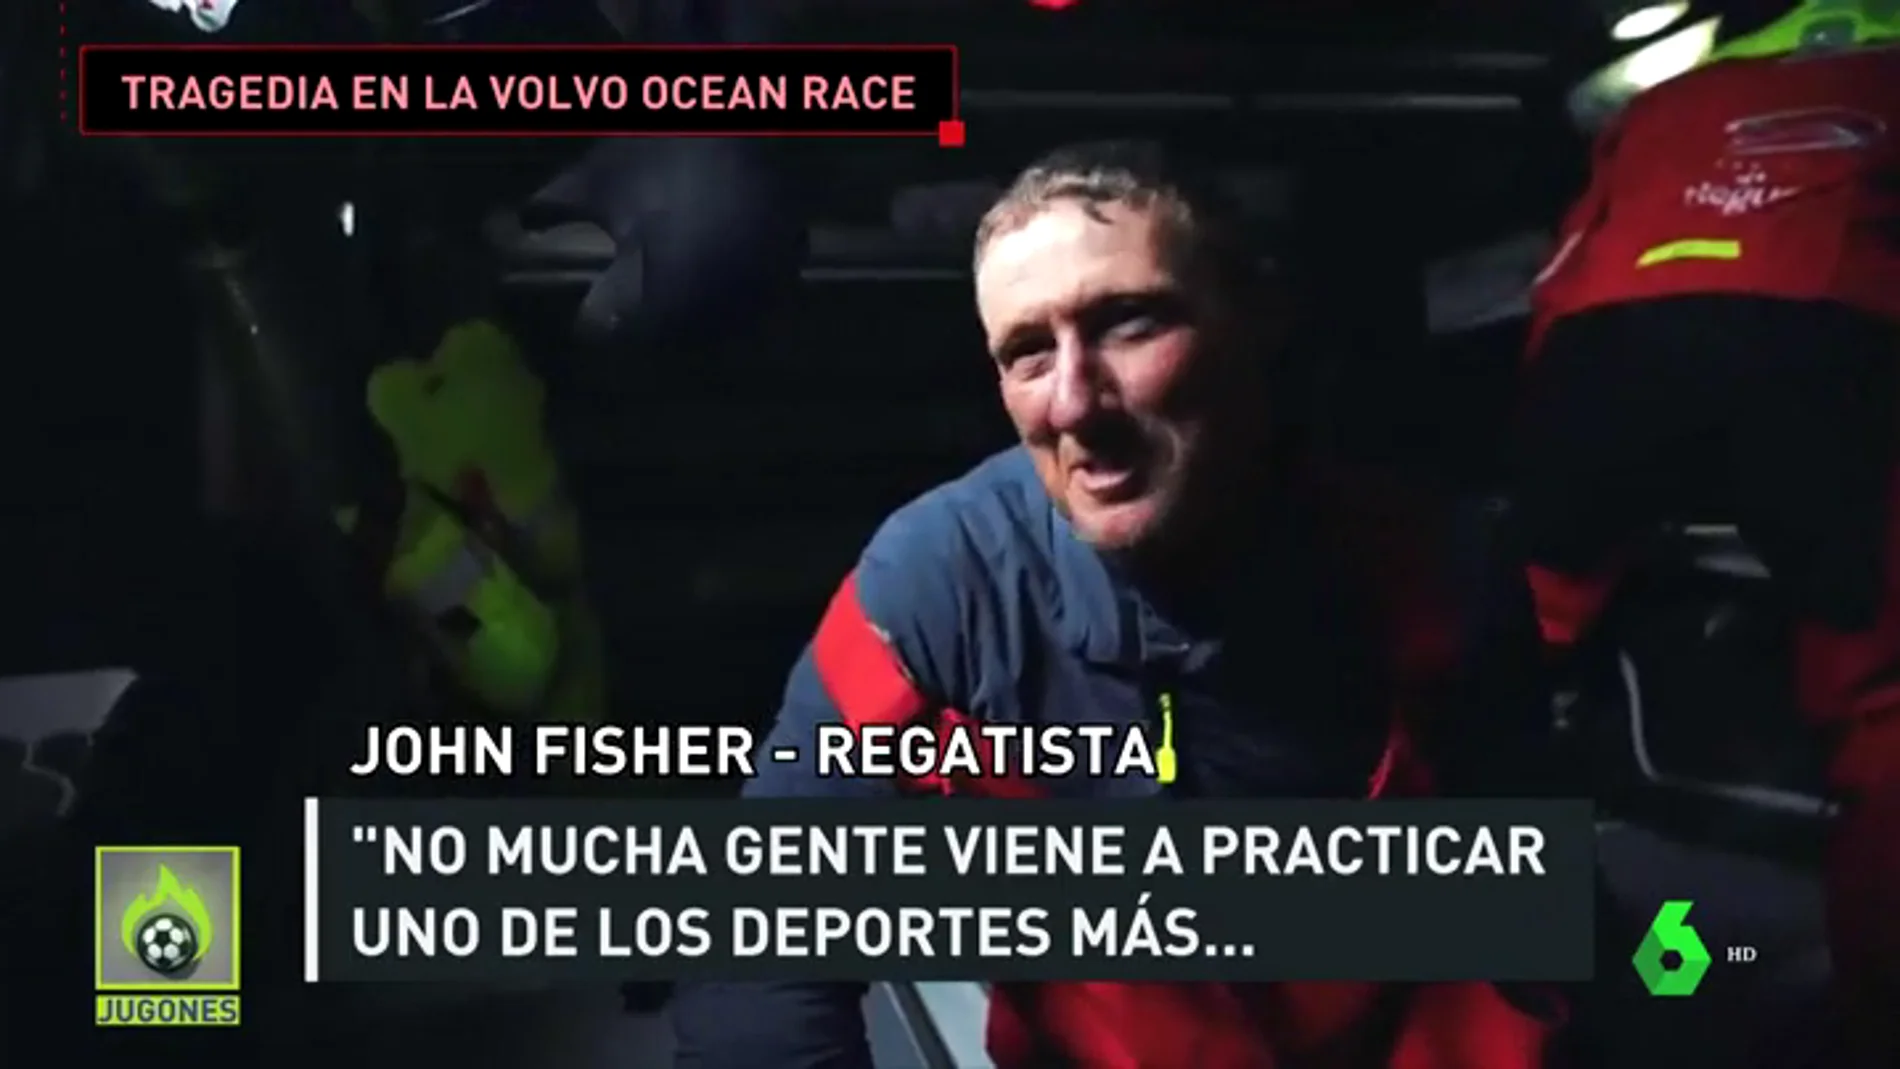 La Volvo Ocean Race da por perdido a John Fisher, regatista inglés que cayó al mar y lleva más de un día desaparecido